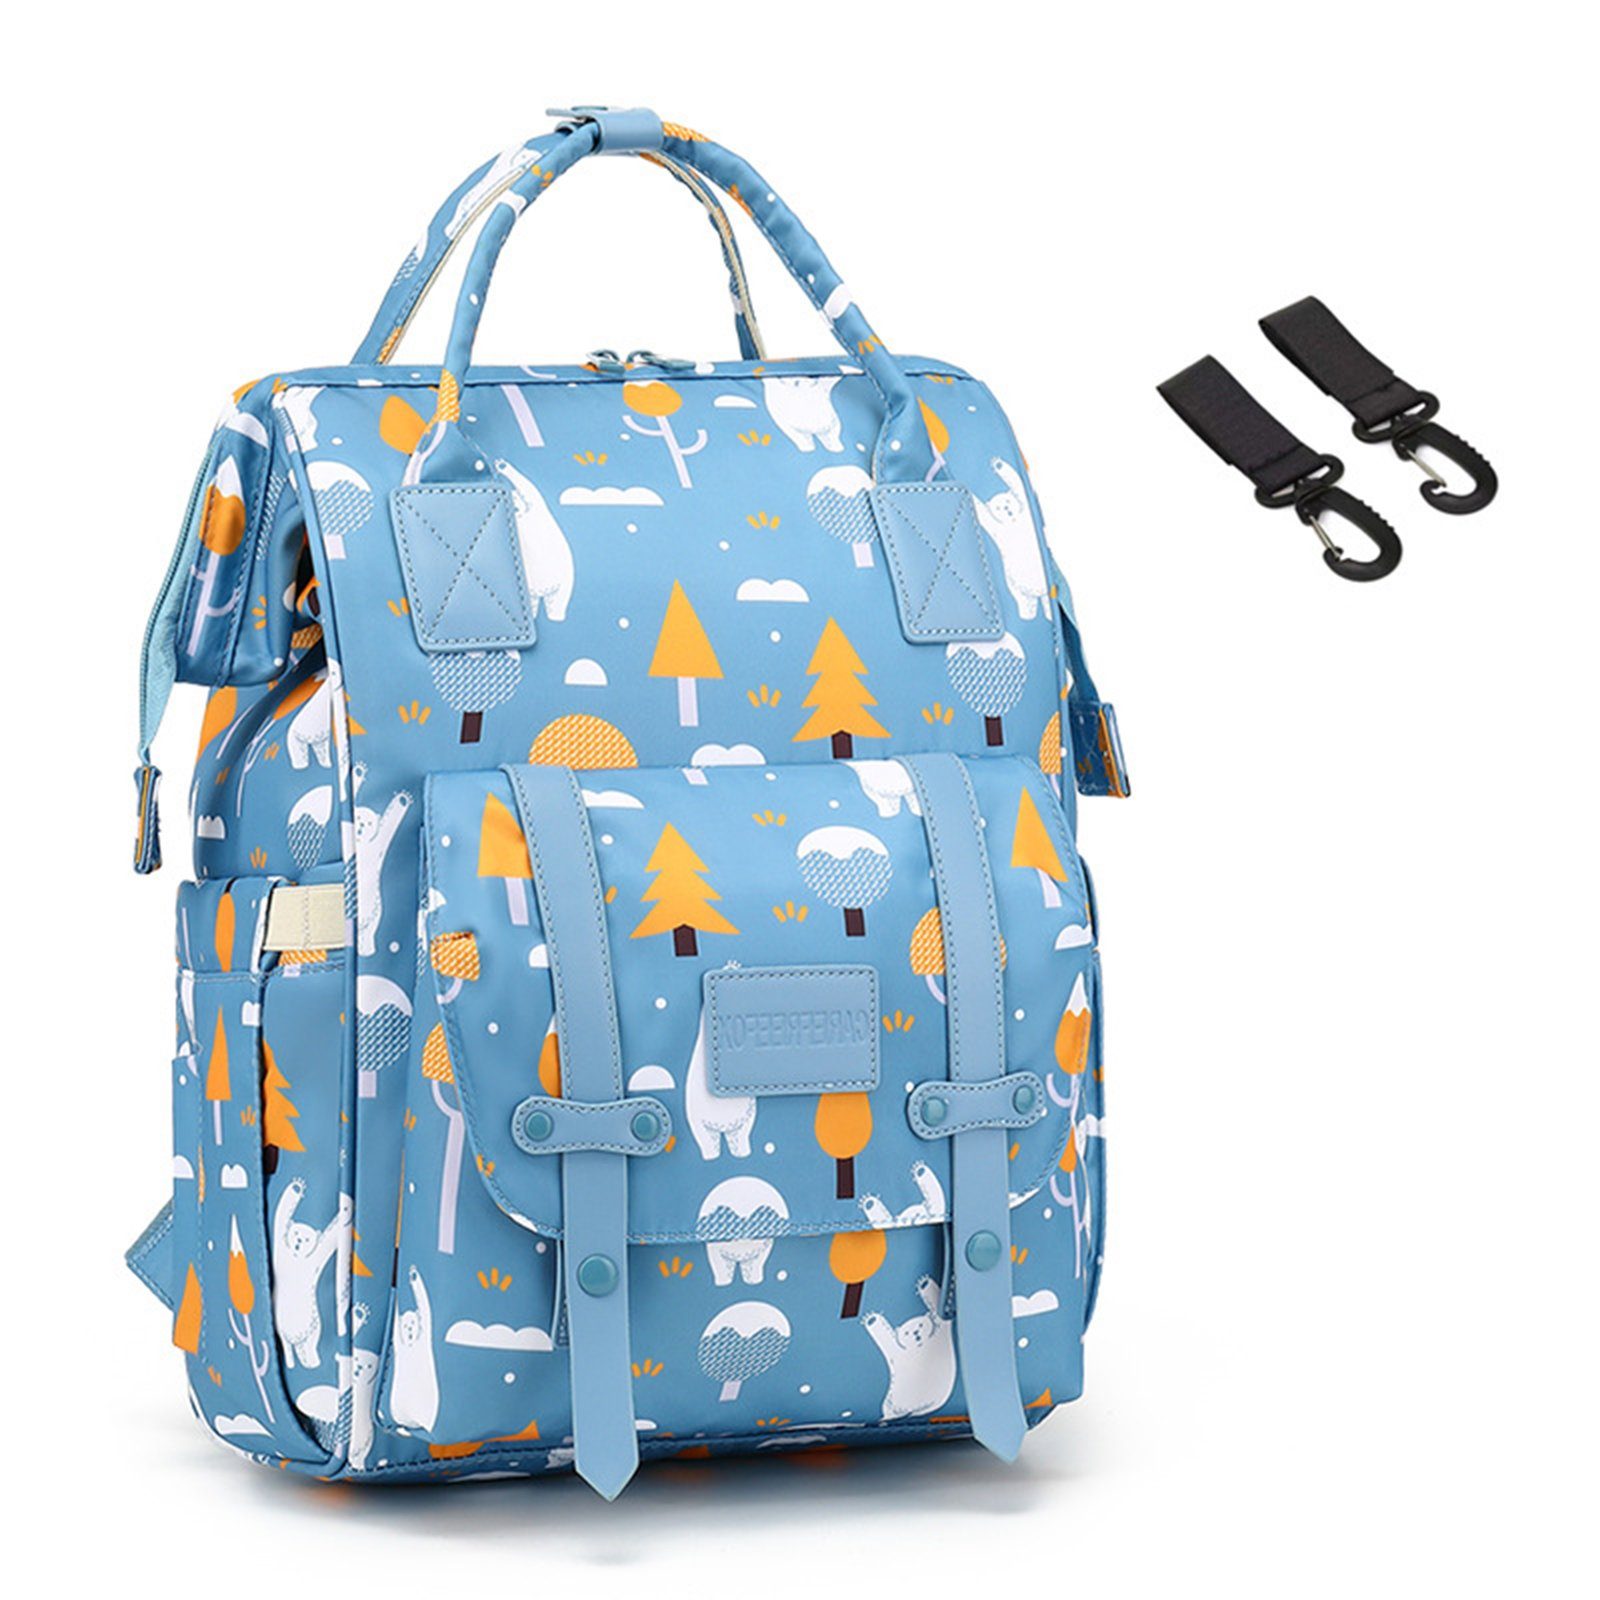 REDOM Wickelrucksack Wickeltasche Rucksack Baby Multifunktions-Babytaschen wasserabweisend (Windeln Babyflasche Milchfläsche Rucksack Tasche mit USB-Anschluss, Multifunktional, Babytasche, Wickelrucksack), mit Kinderwagen-Haken Blau